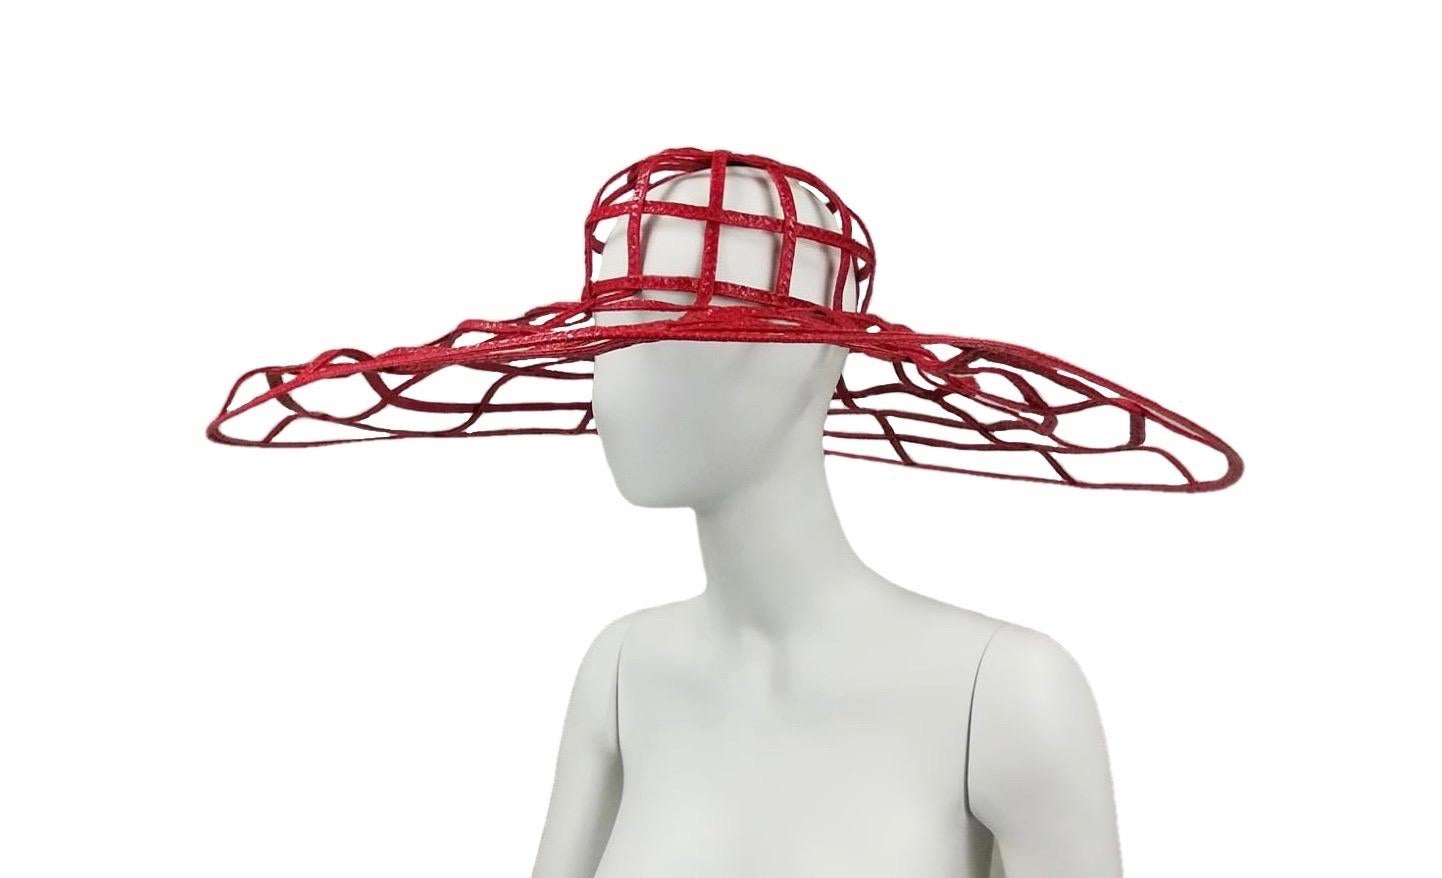 CHANEL Frühjahr 1992 
Äußerst seltener netzartiger Hut aus rotem Bast mit sehr breiter Krempe
Maßnahme 57
Außendurchmesser cm. 66 - Außenumfang cm. 207
Innendurchmesser cm. 18.2 - Innenumfang cm. 57
In gutem Zustand, der Hut hat im Laufe der Zeit